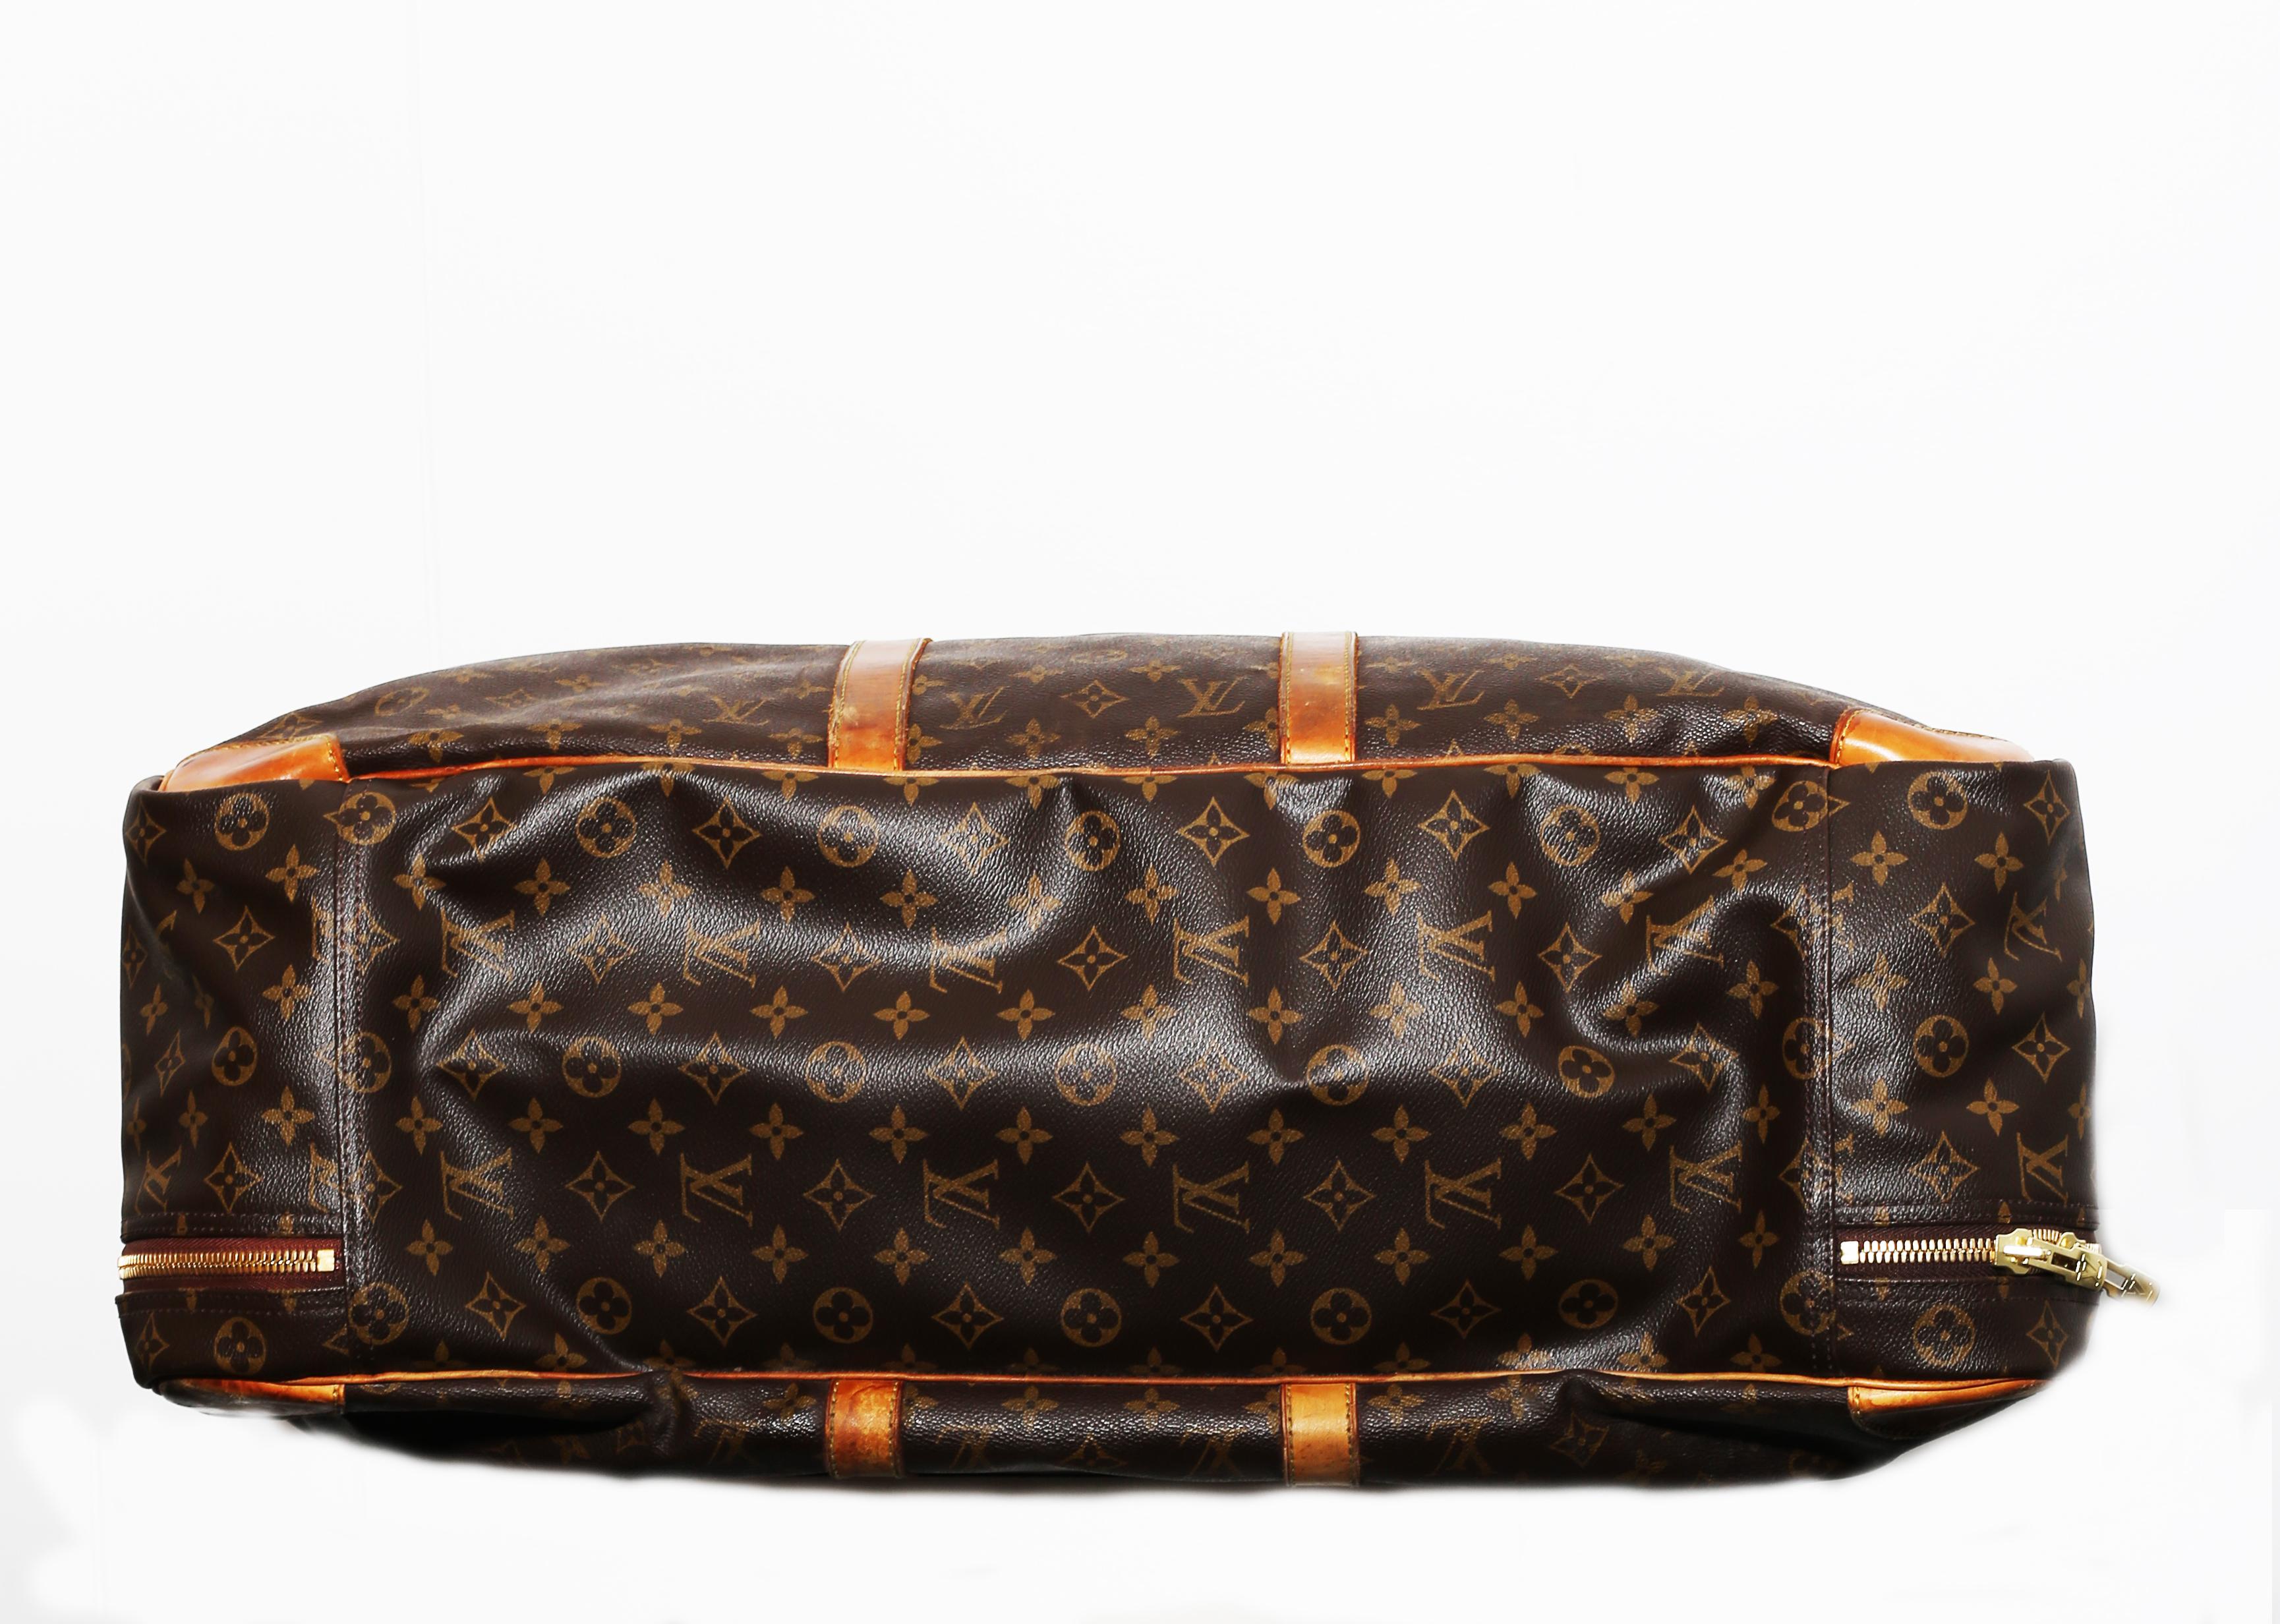 Women's or Men's Louis Vuitton Monogram Sirius Suitcase 65cm Luggage Weekender Travel Bag 90´s